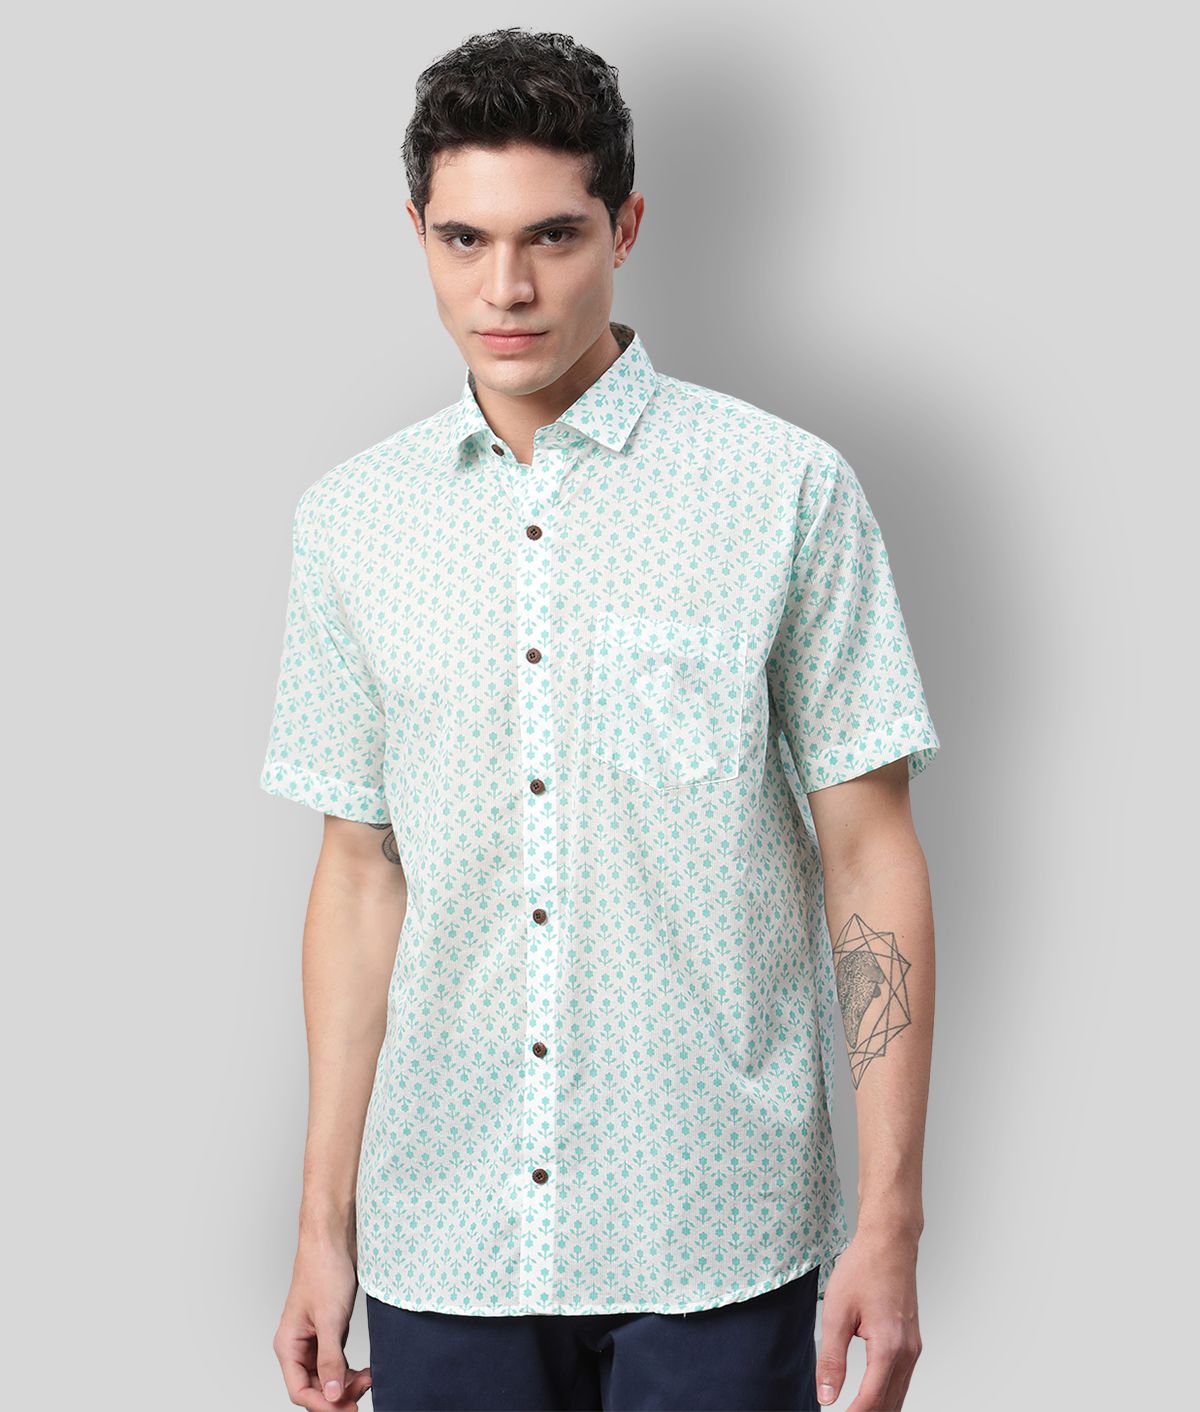     			Millennial Men - White Cotton Regular Fit Men's Casual Shirt (Pack of 1 )